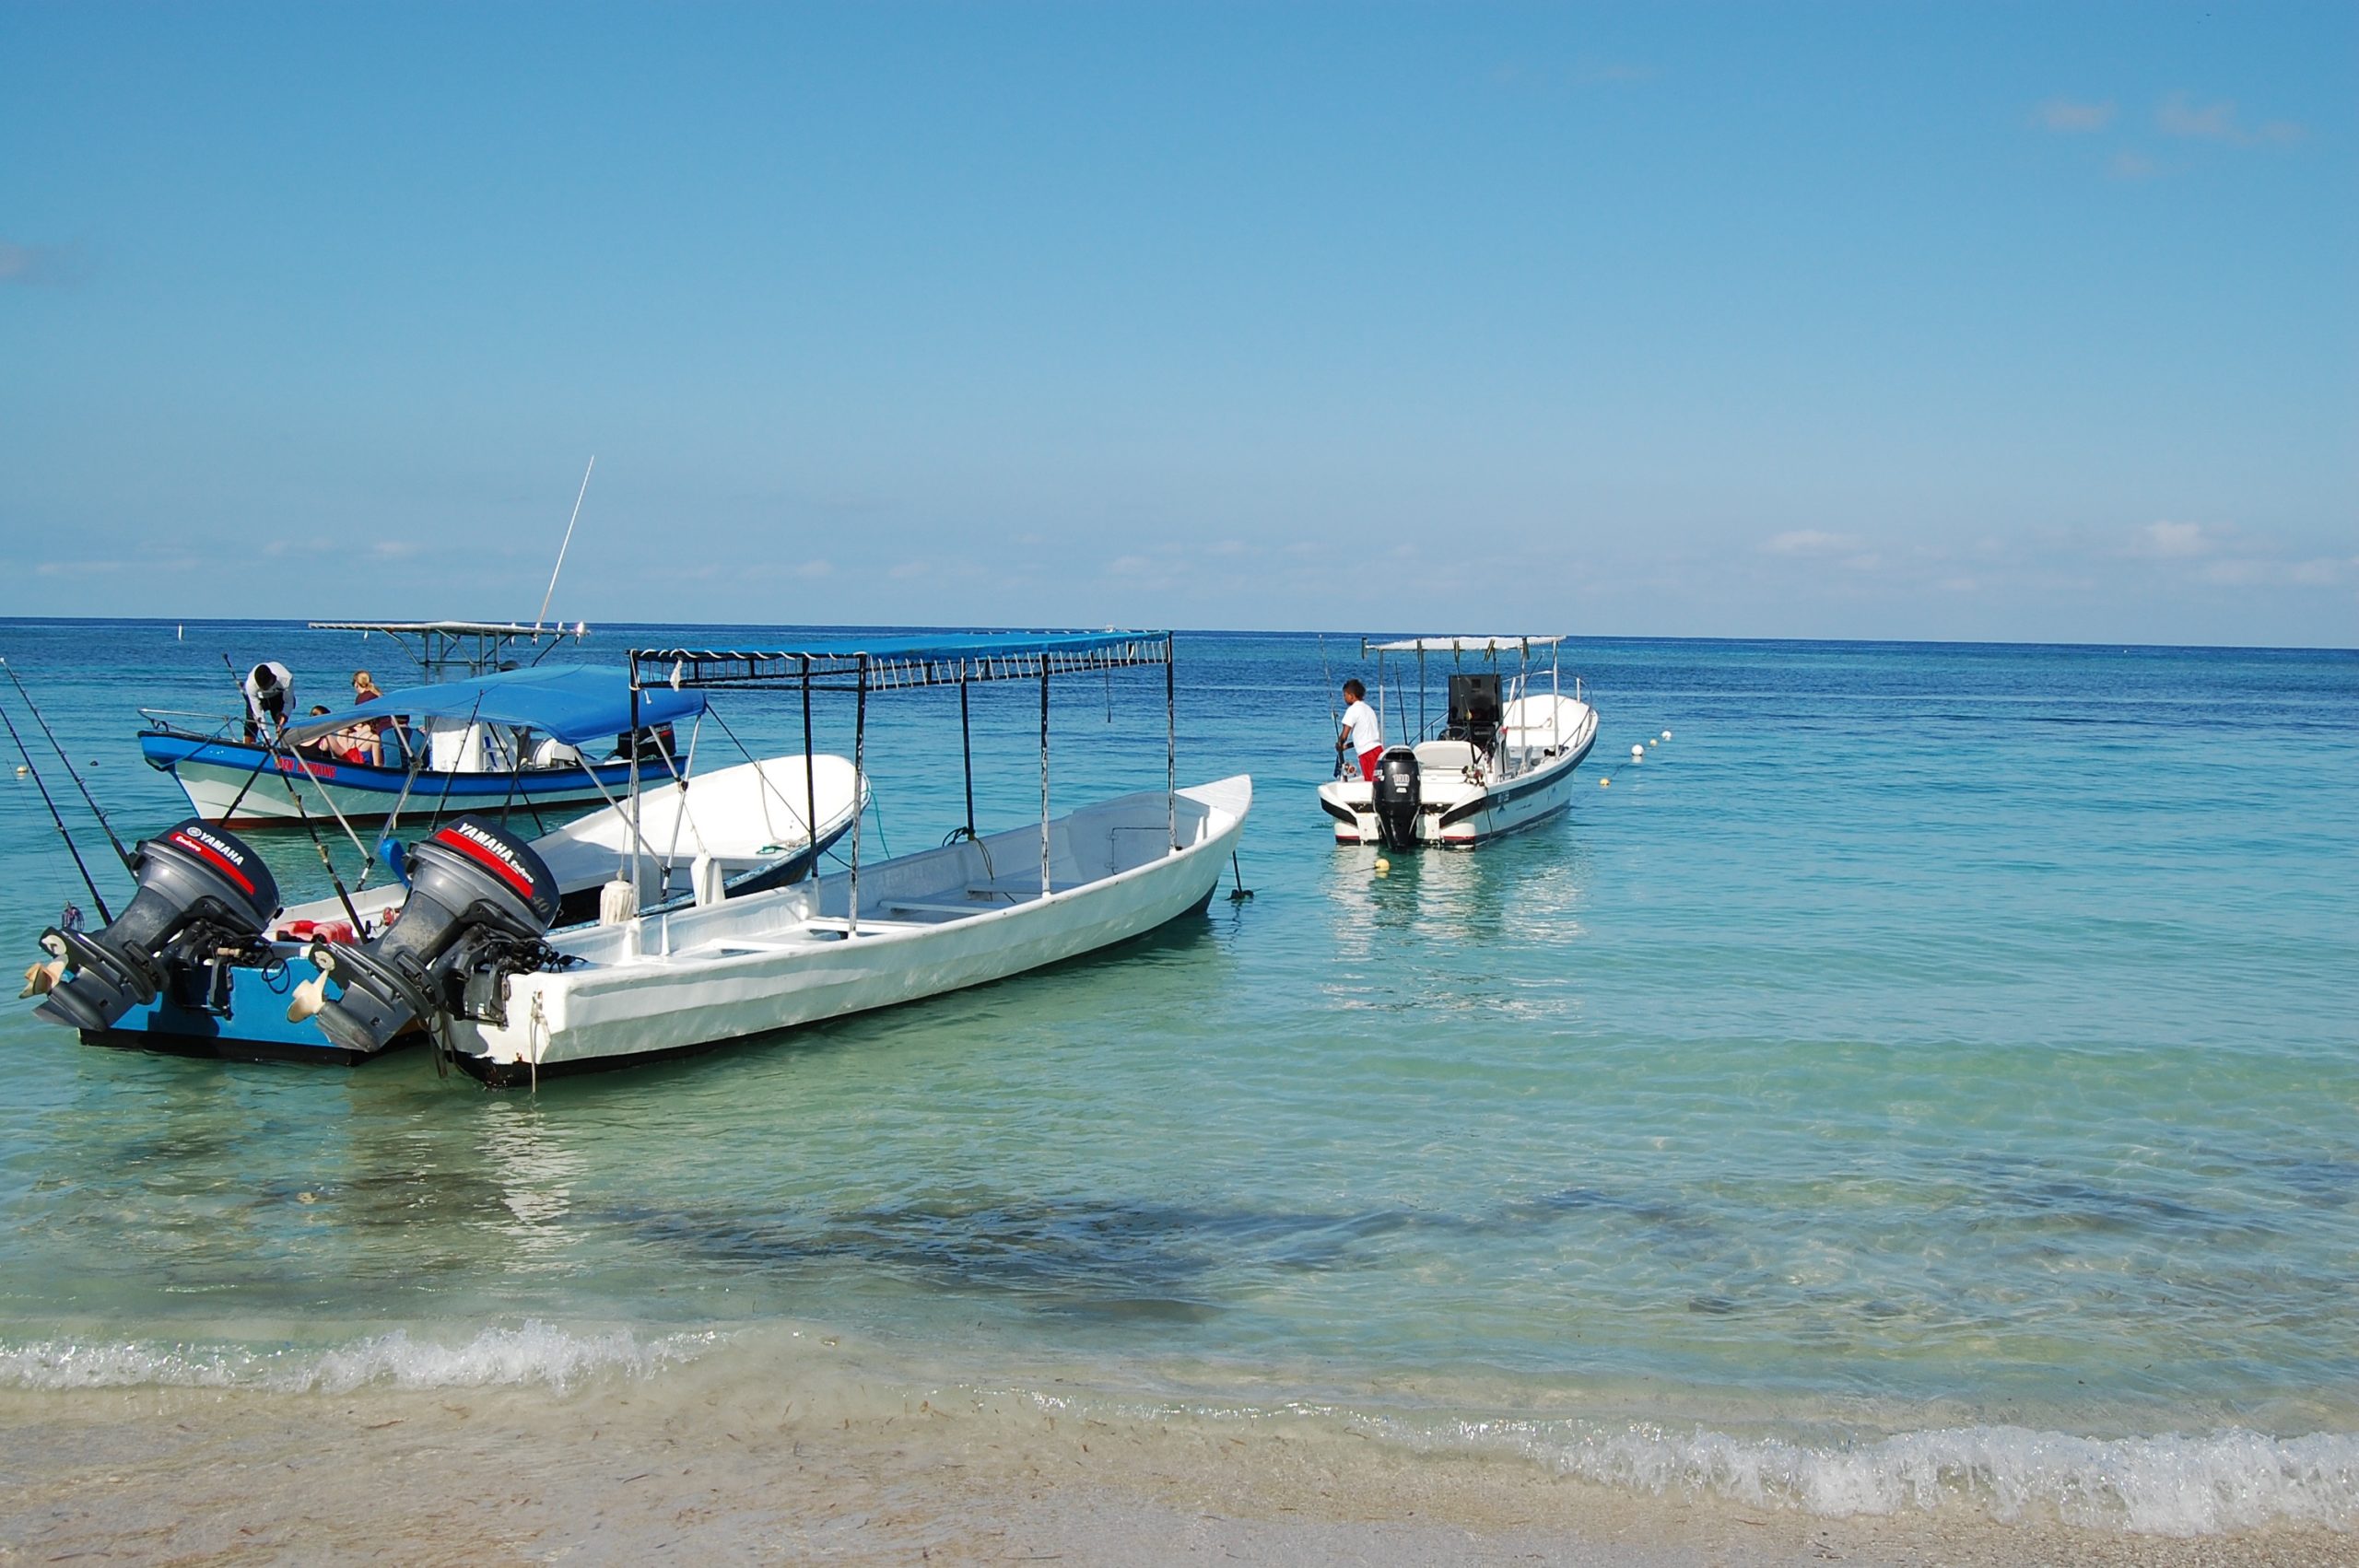 boats parked off the coast of Roatan, Honduras